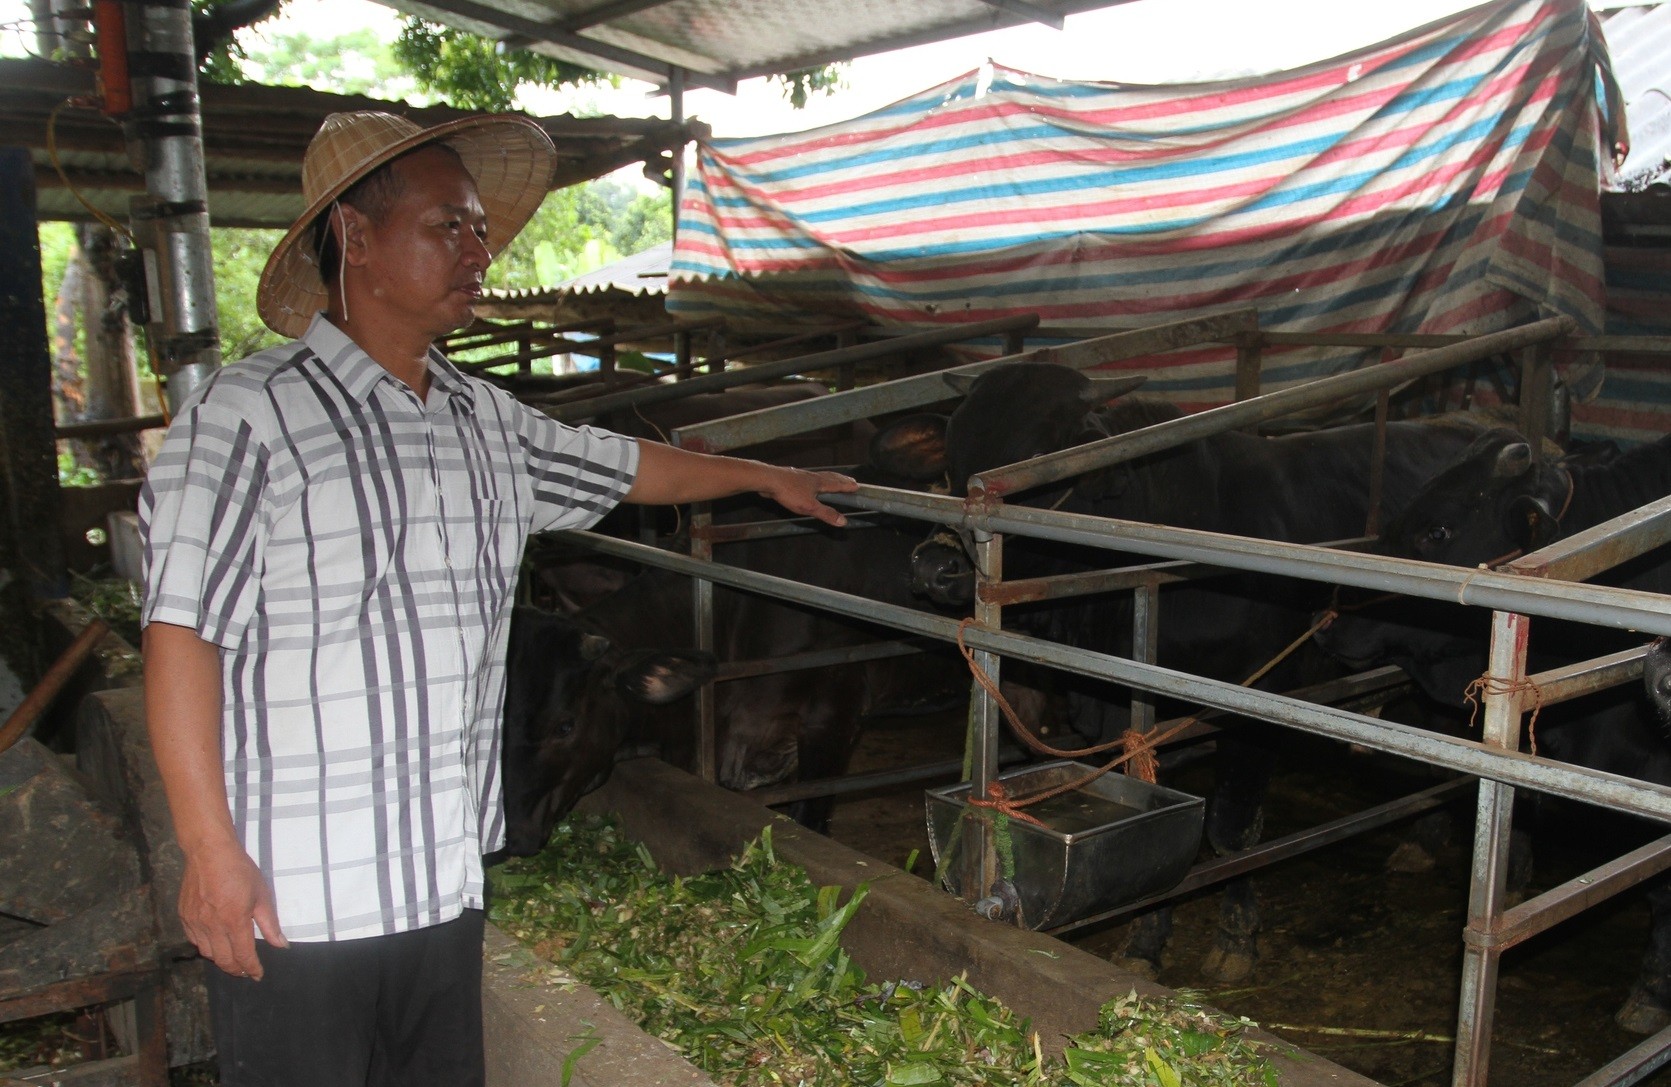 
Bên cạnh việc nuôi gà thịt thì khoảng 5 năm trở lại đây, gia đình của ông Quang còn tiến hành nuôi bò 3B với số lượng hơn chục con gà mỗi năm
